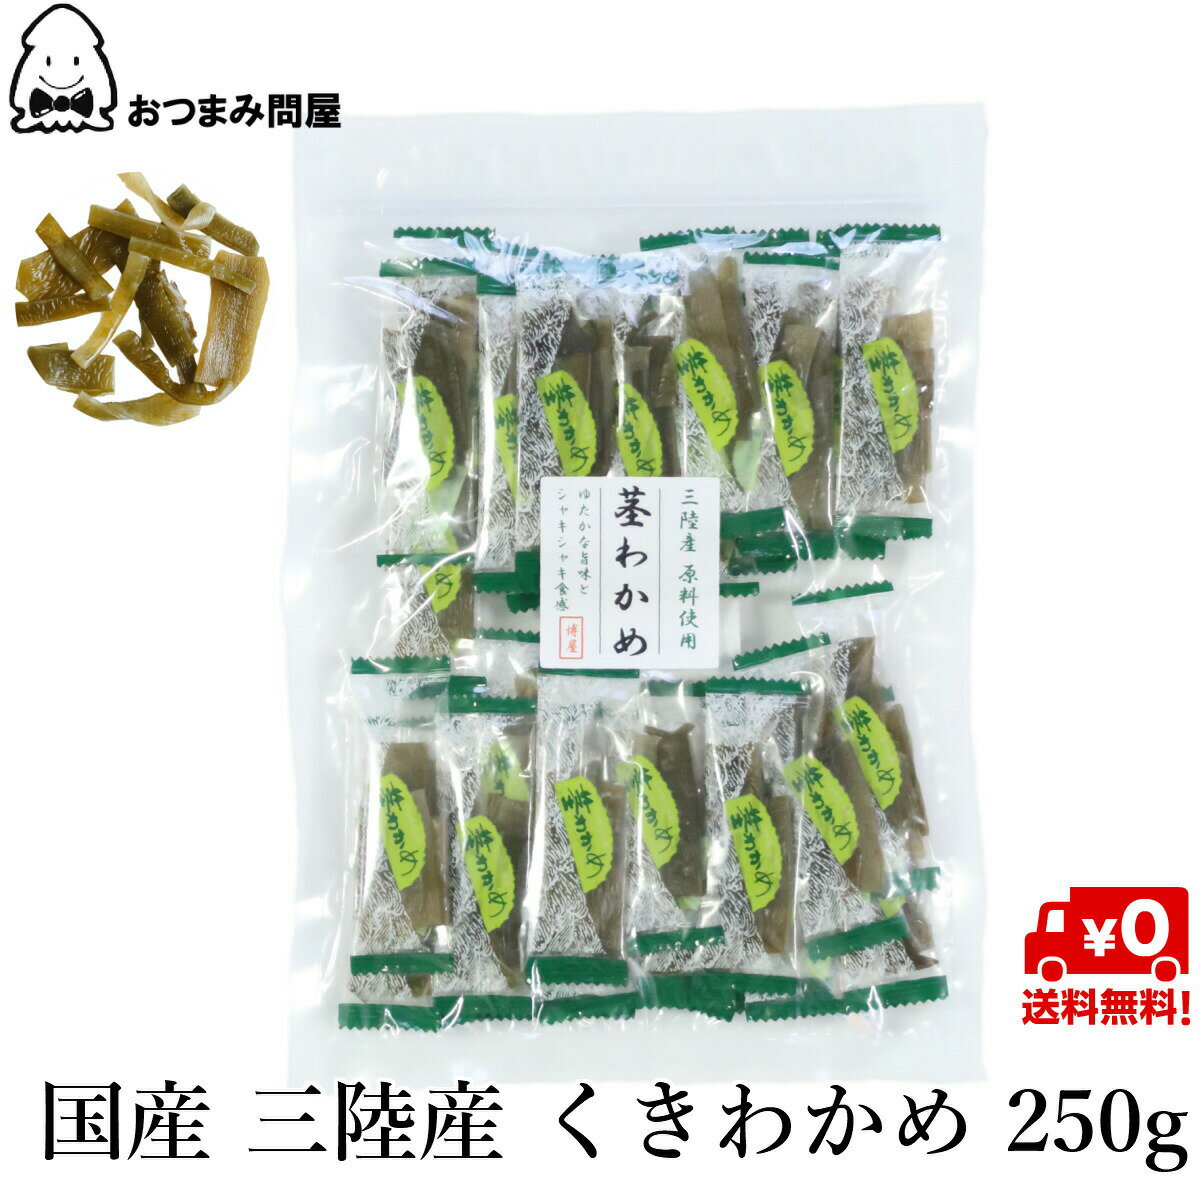 海帶芽莖 日本產 三陸產 250g x 1包 常溫保存 業務用 夾鏈袋裝 日本必買 | 日本樂天熱銷